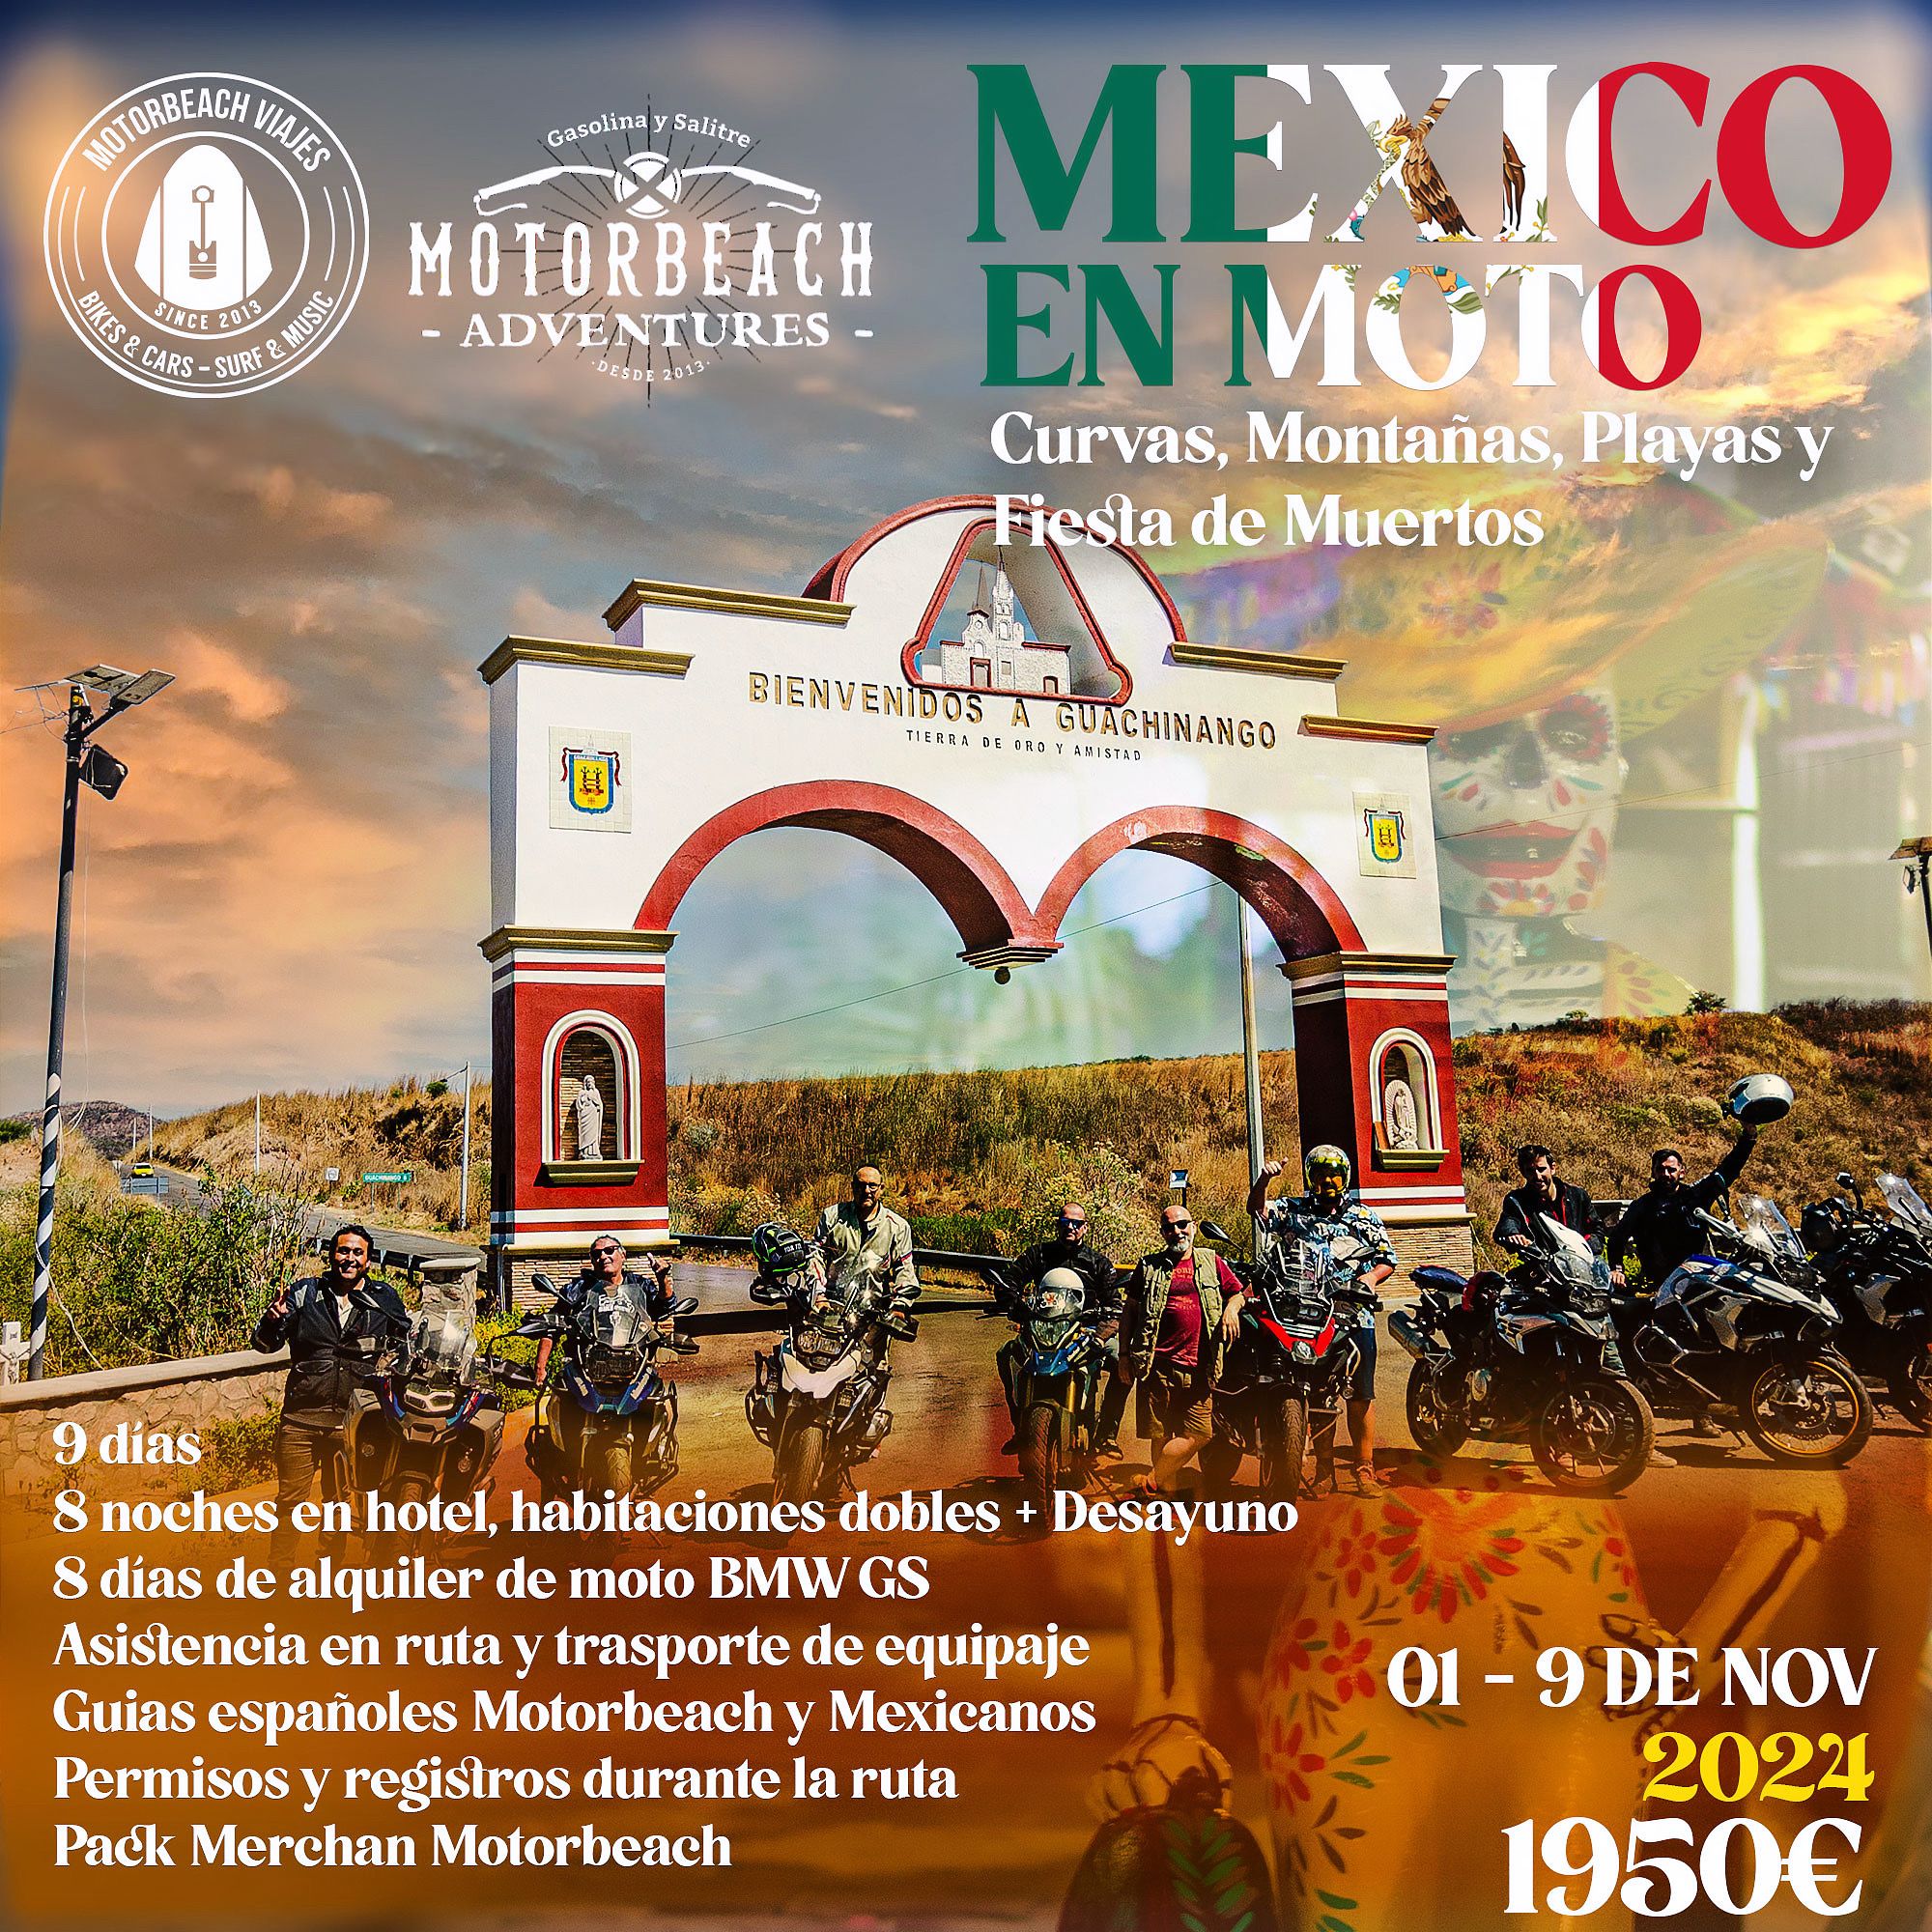 En este momento estás viendo México en moto, curvas, montañas, playas y fiesta de muertos. Noviembre